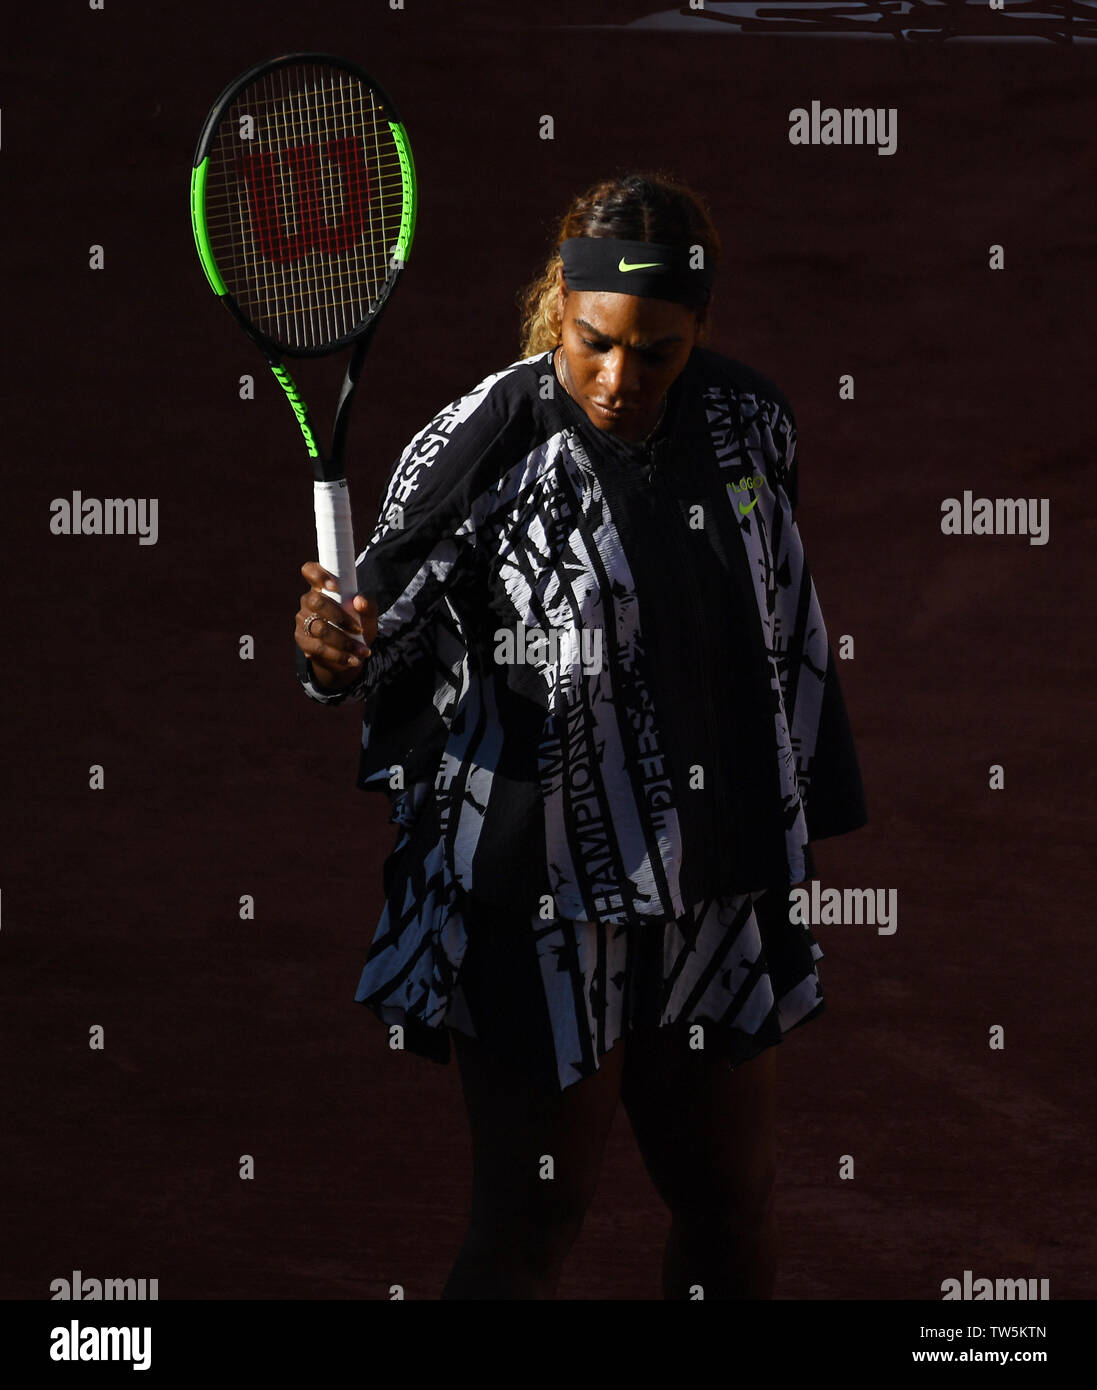 Parigi Francia French Open Championships Roland Garros Serena Williams (USA) in azione durante il secondo turno singles match foto Roger Parker Internation Foto Stock